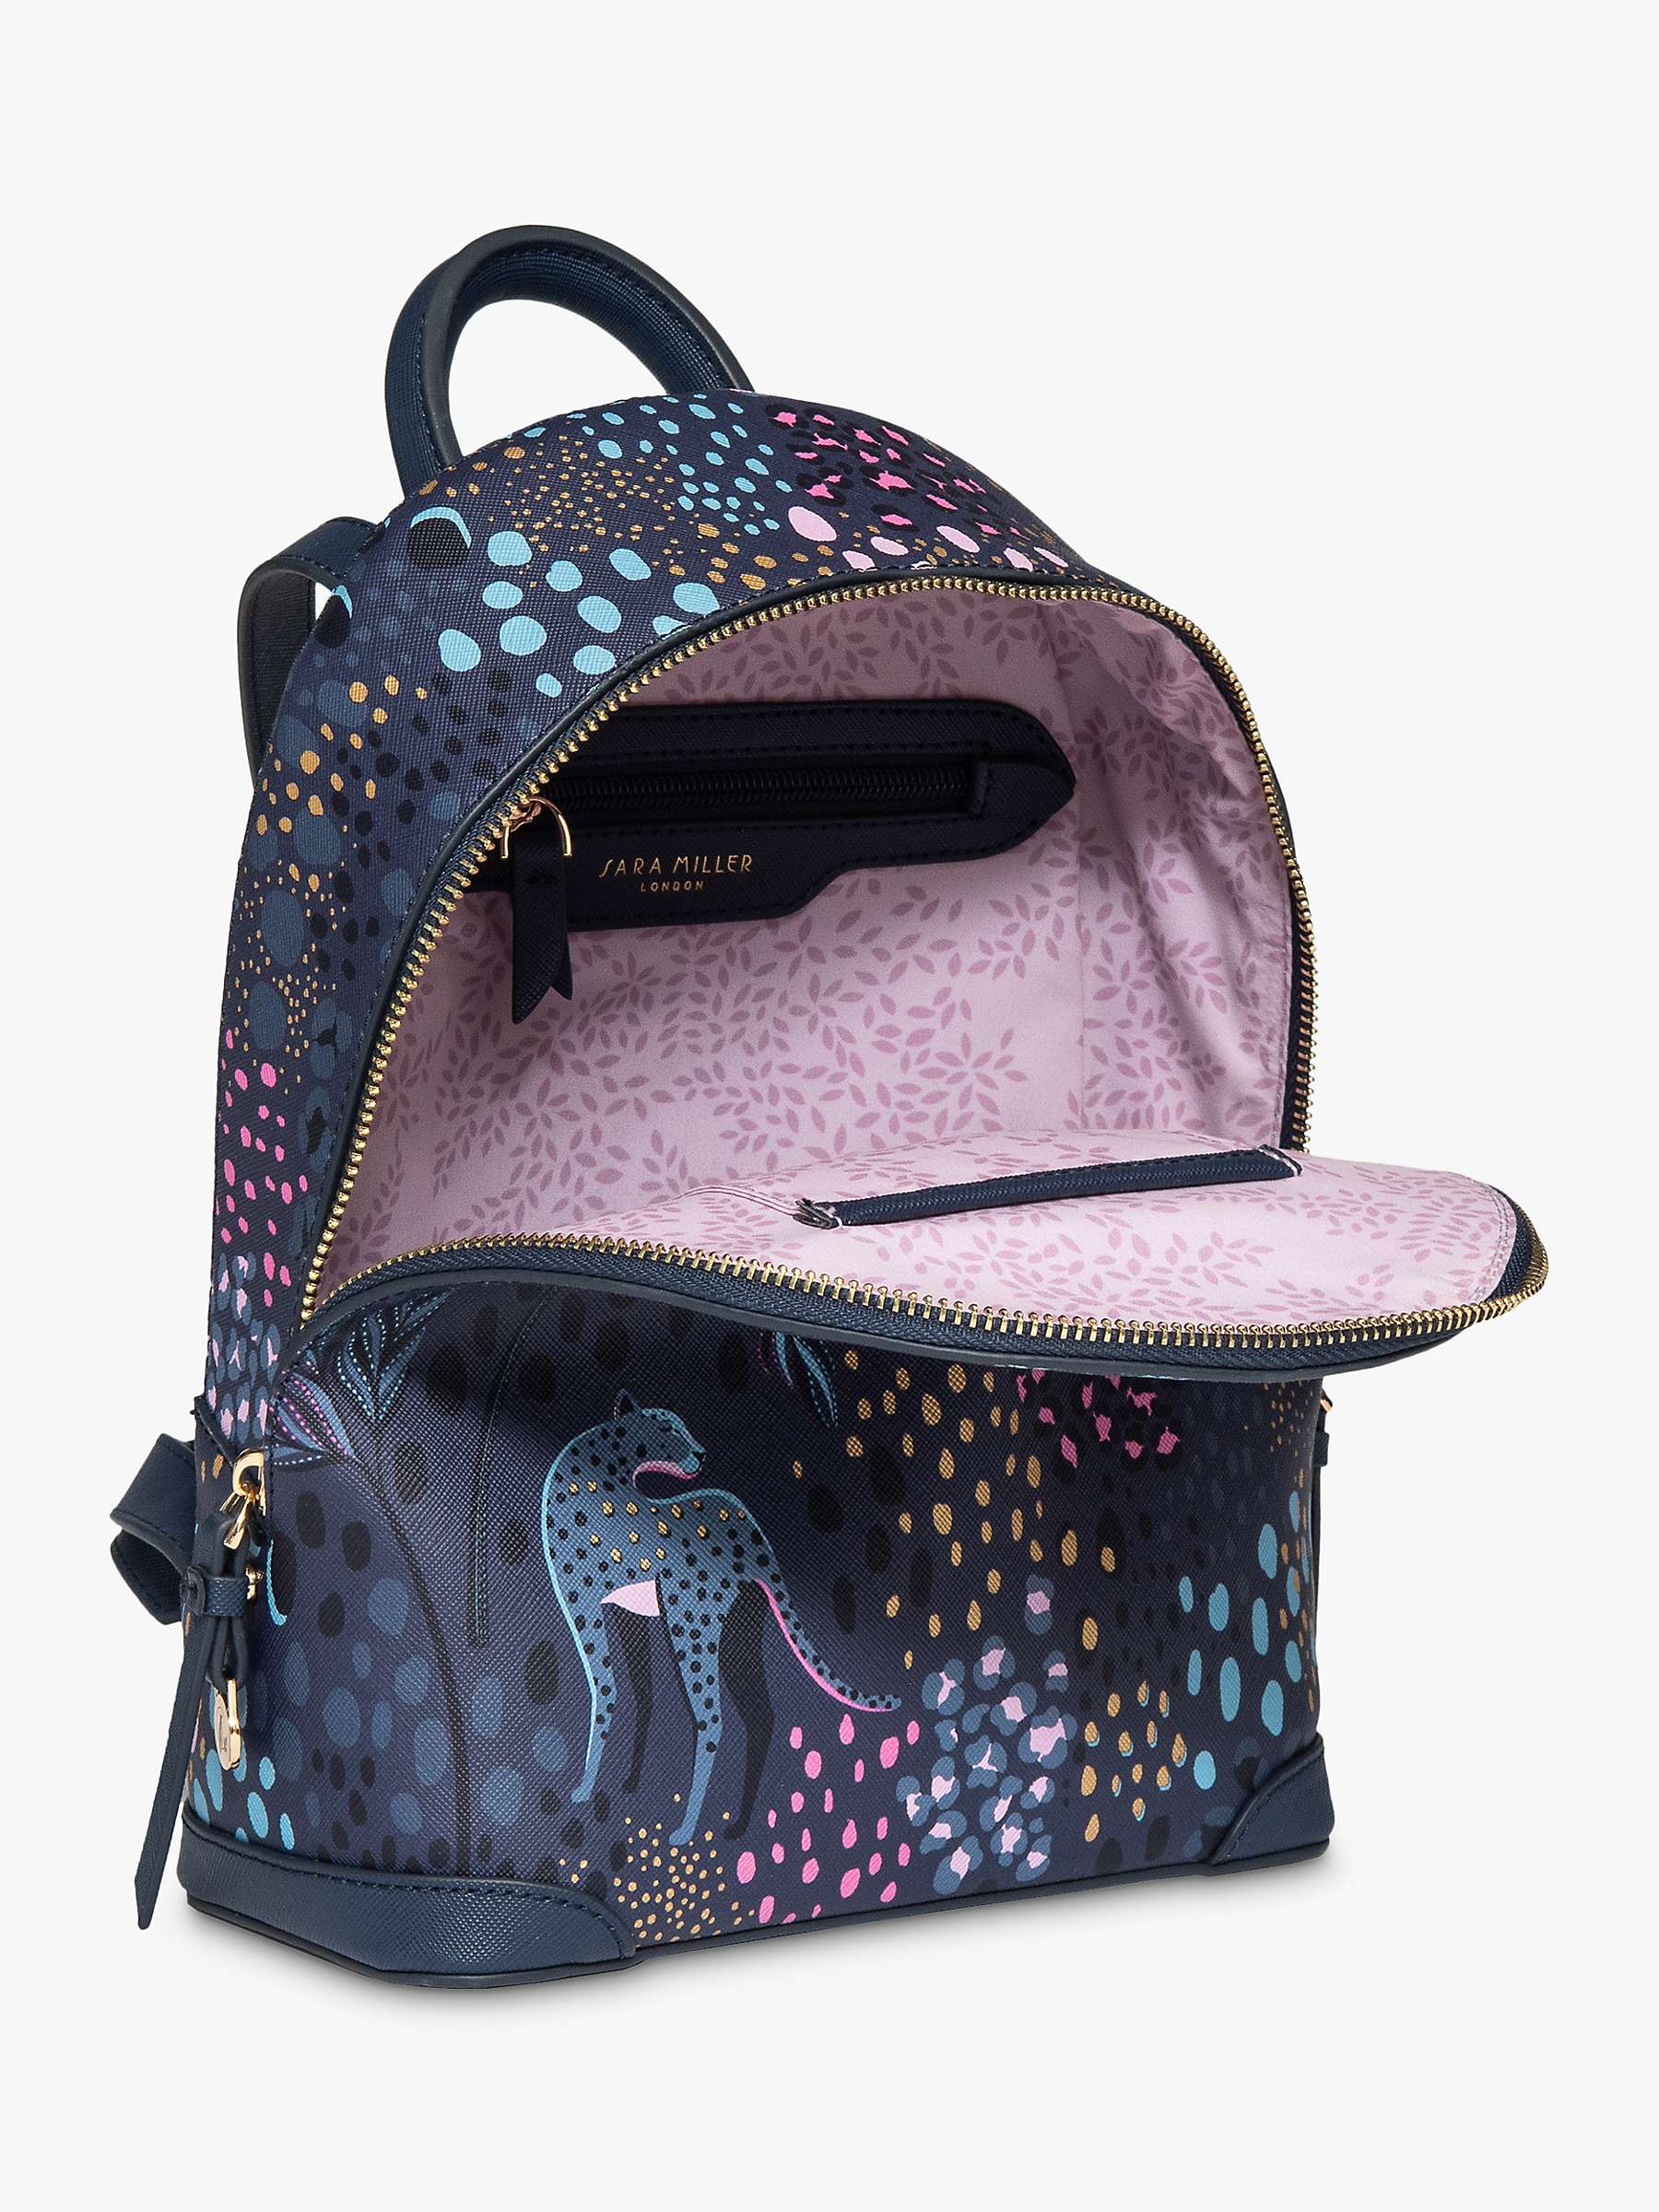 Buy Sara Miller Embellished Mini Backpack, Midnight Leopard Online at johnlewis.com